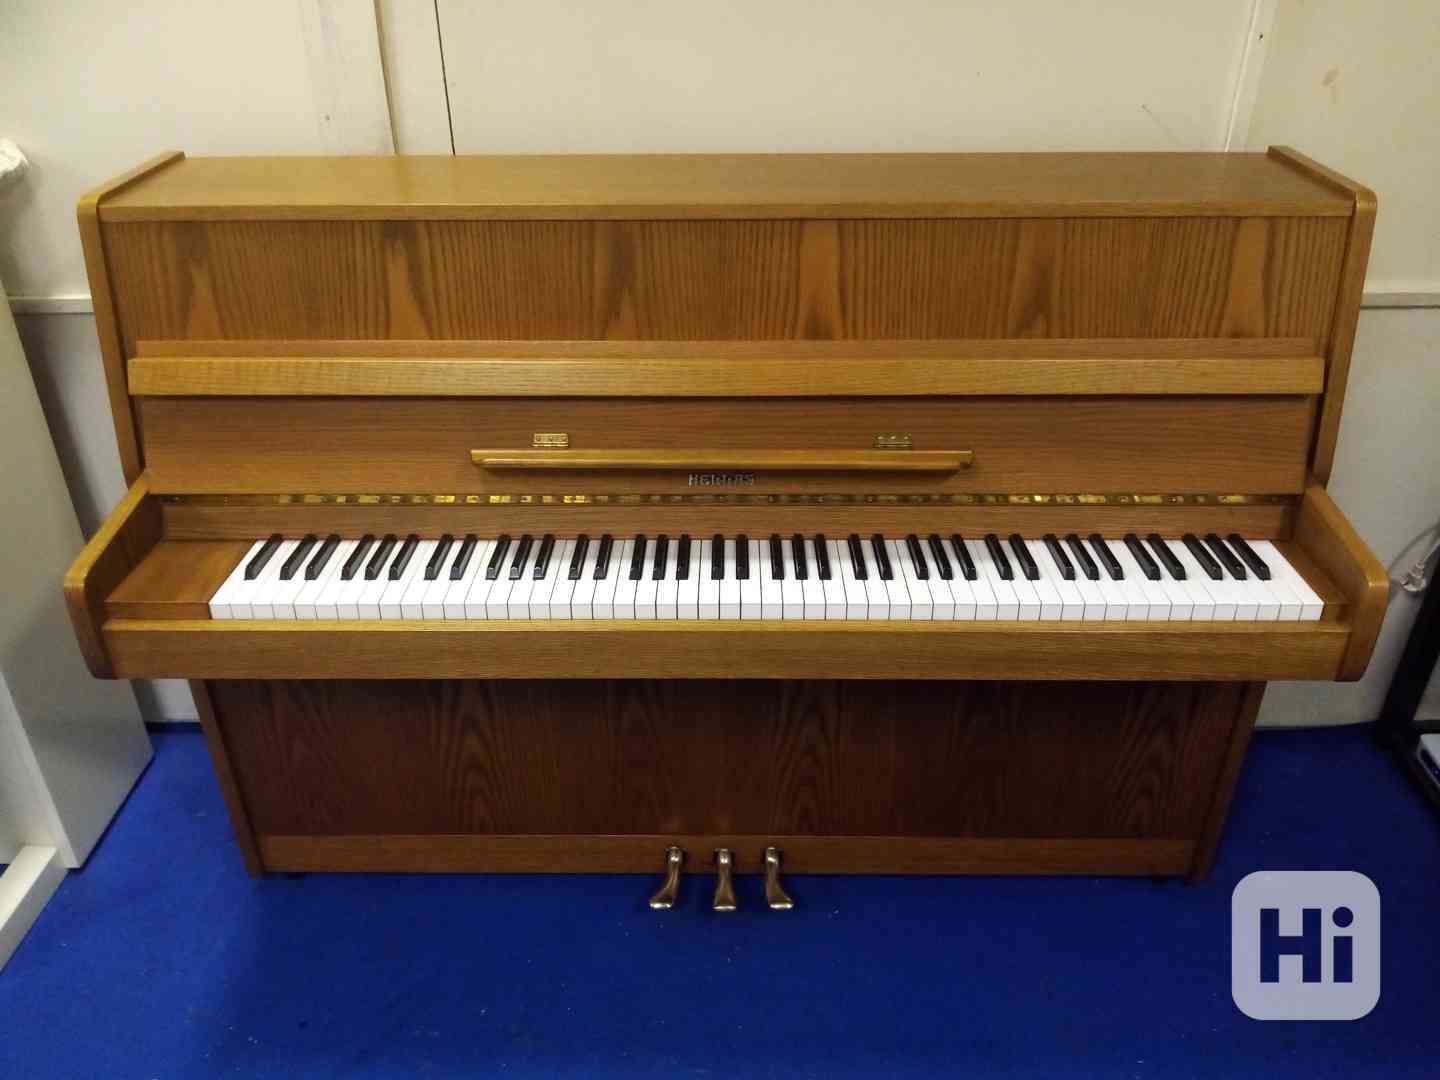 Prakticky nové profesionální pianino HELLAS záruka+doprava - foto 1